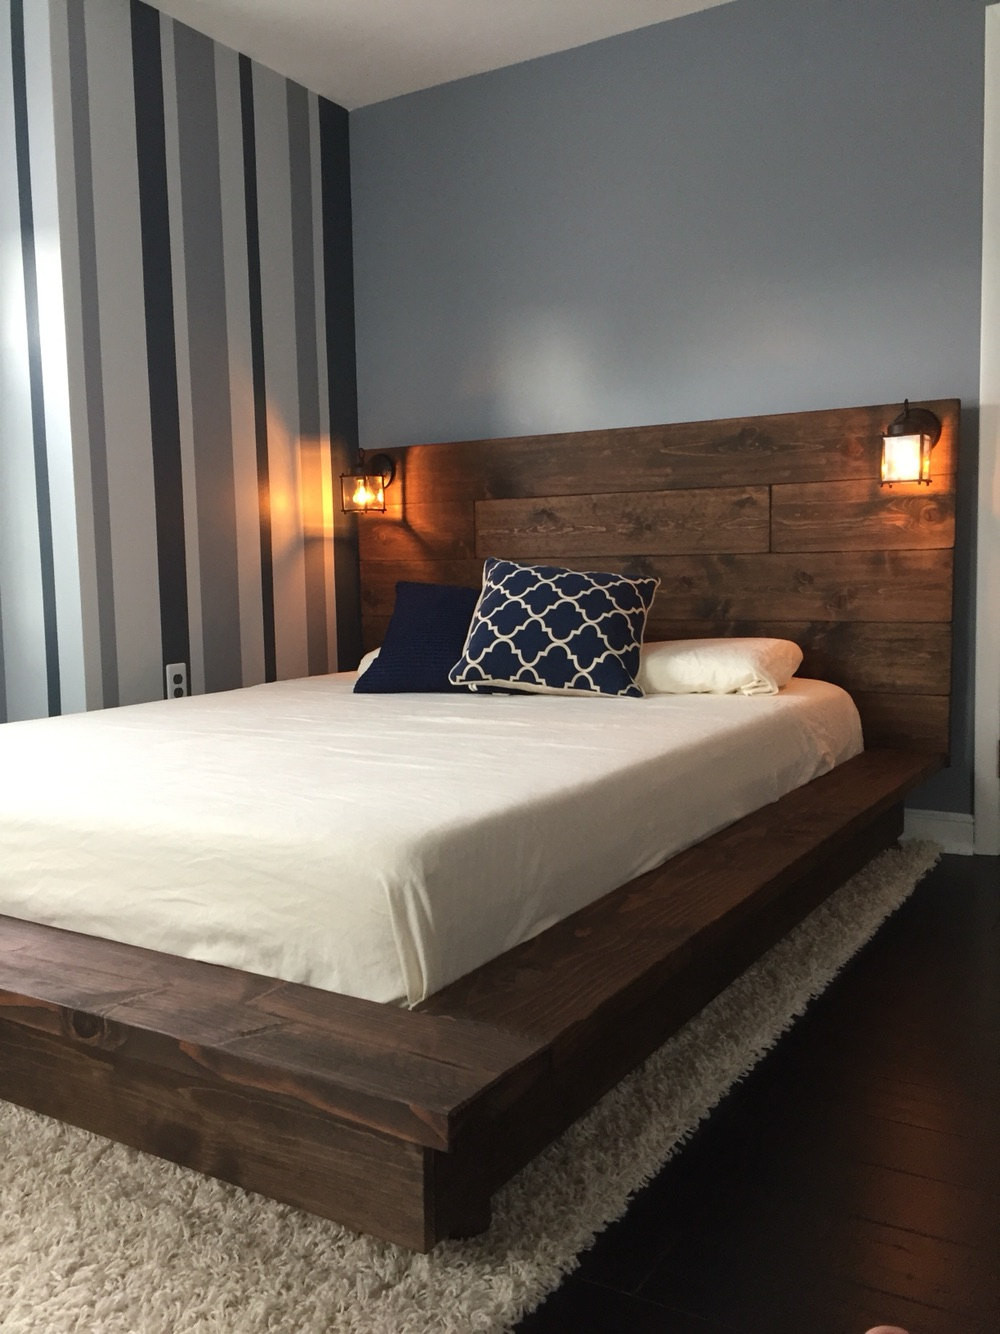 DIY Wooden Bed Platform
 Floating Wood Platform Bed frame with Lighted